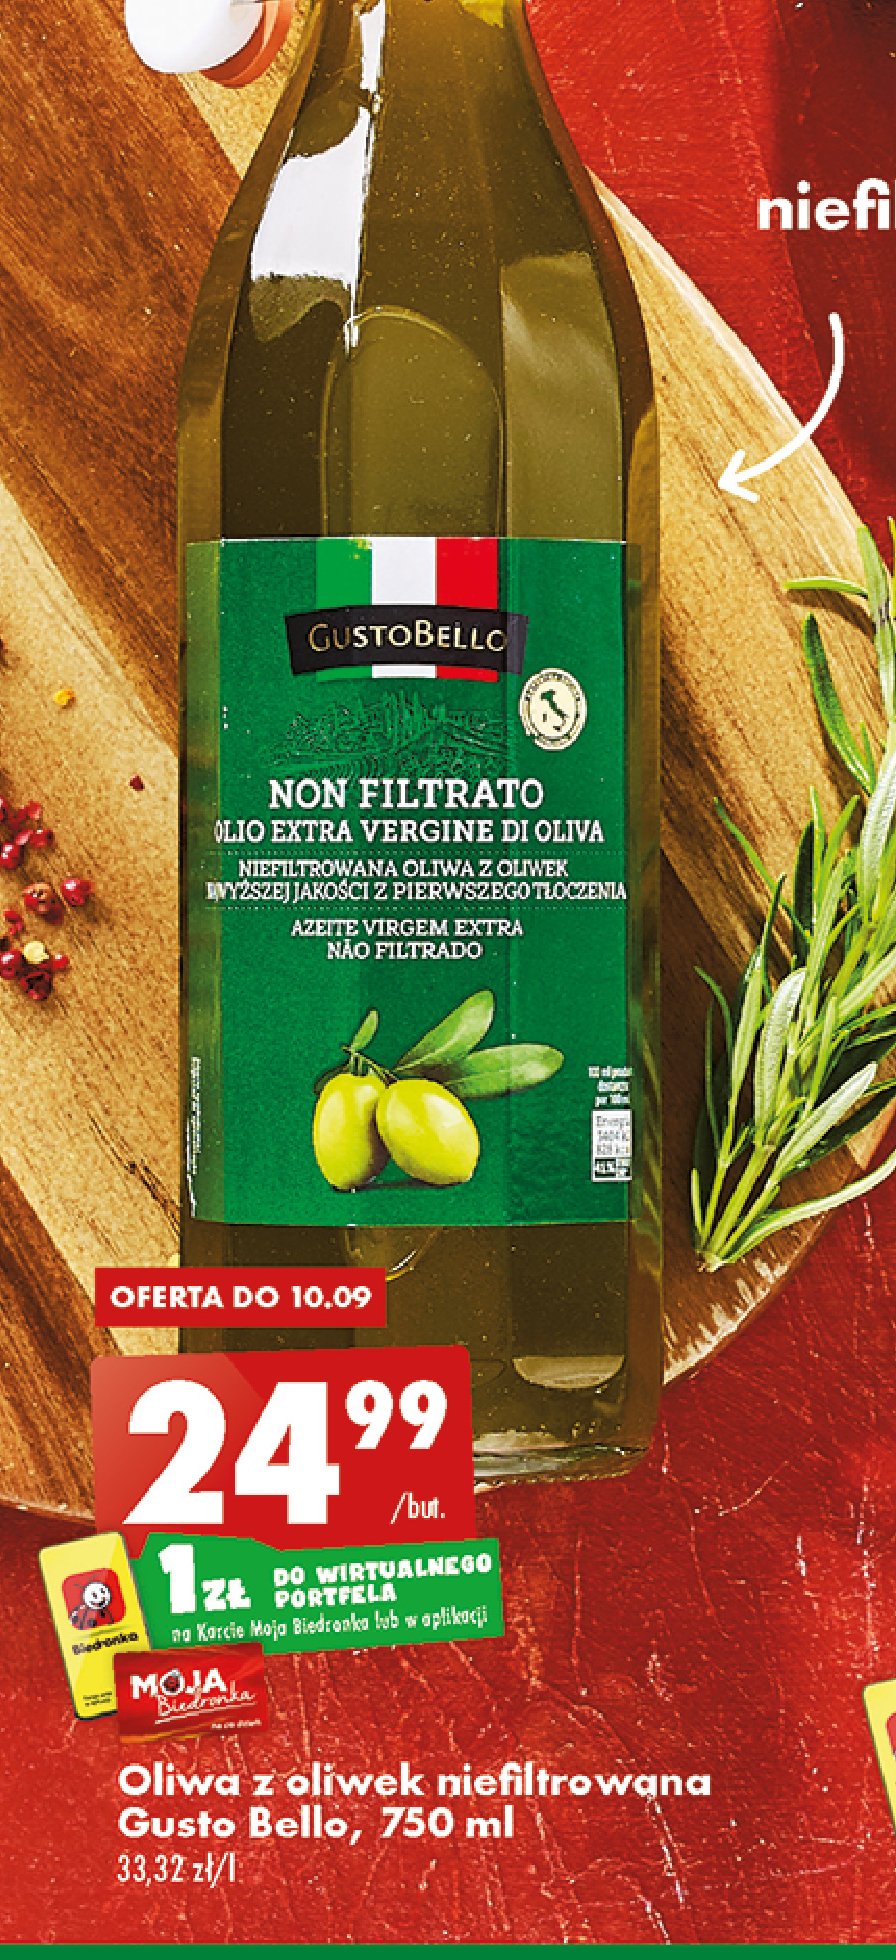 Oliwa z oliwek non filtrato Gustobello promocja